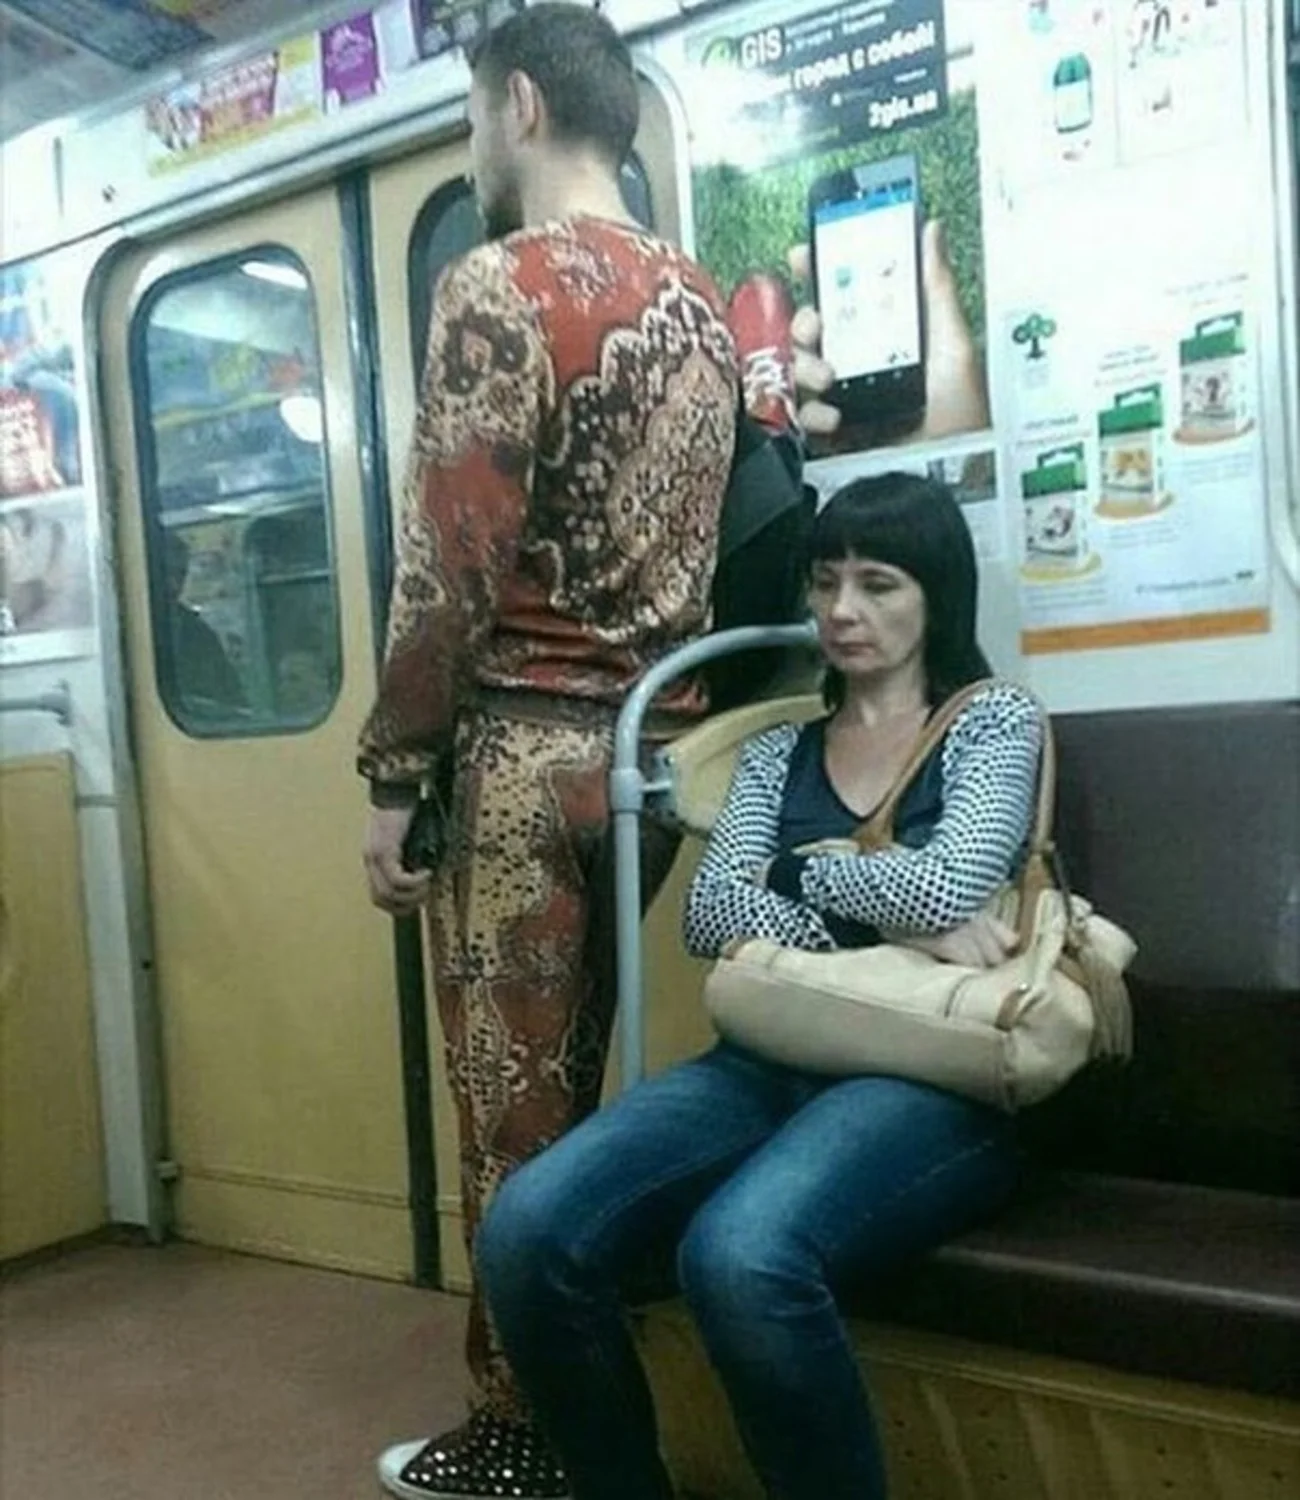 Модники и метро: ТОП-5 самых забавных нарядов, которые немедленно улучшат настроение - фото 469244